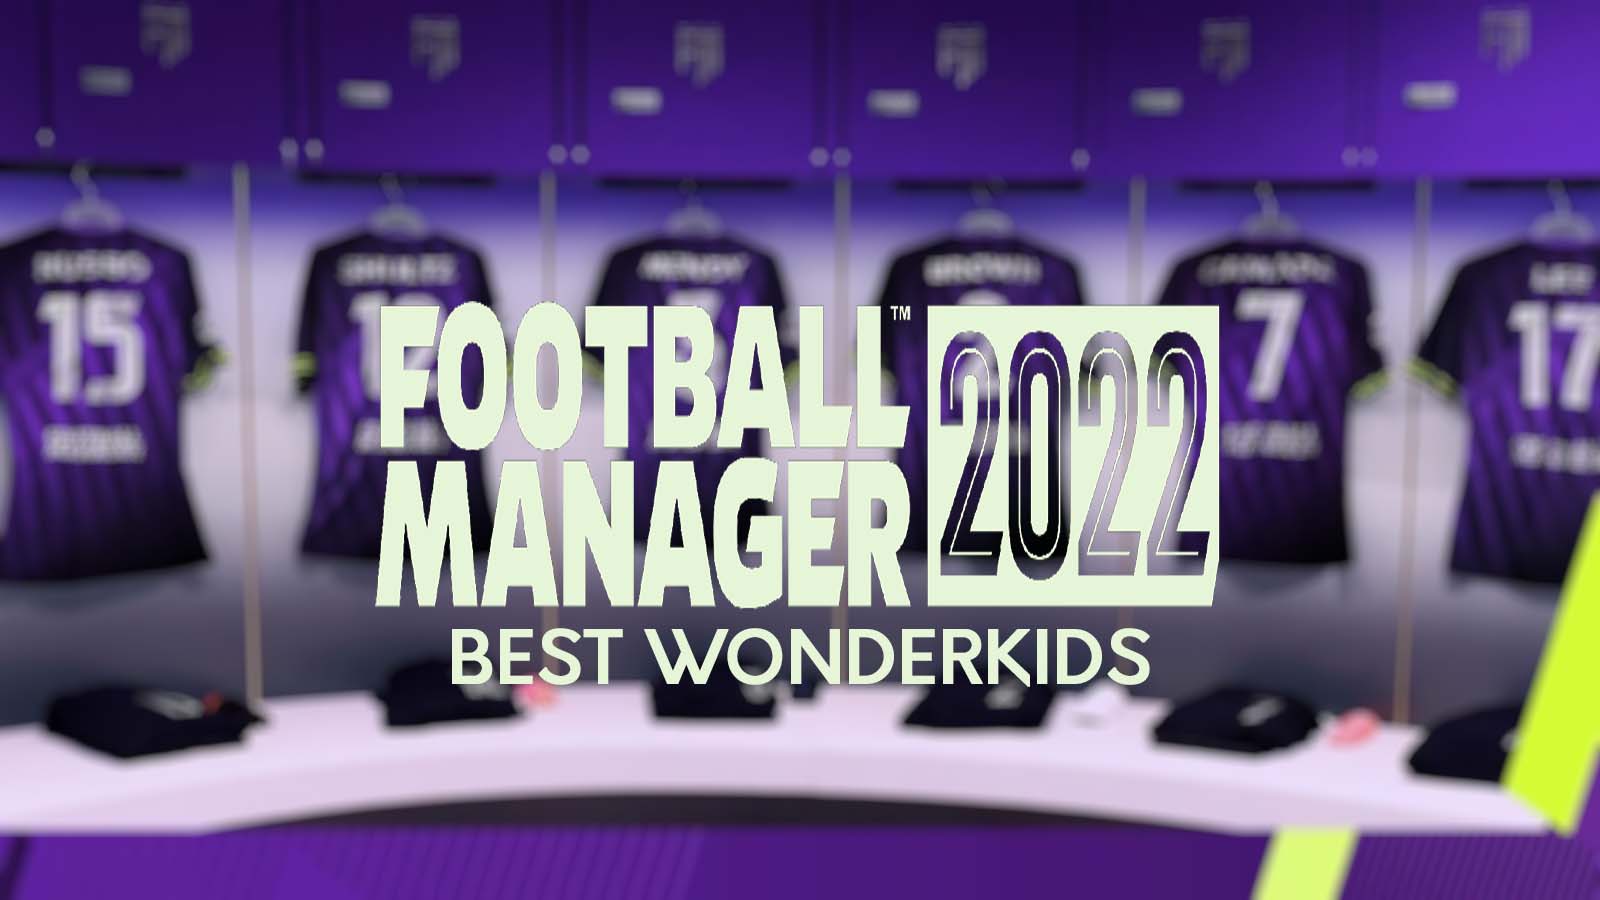 Football Manager 2022 best wonderkids